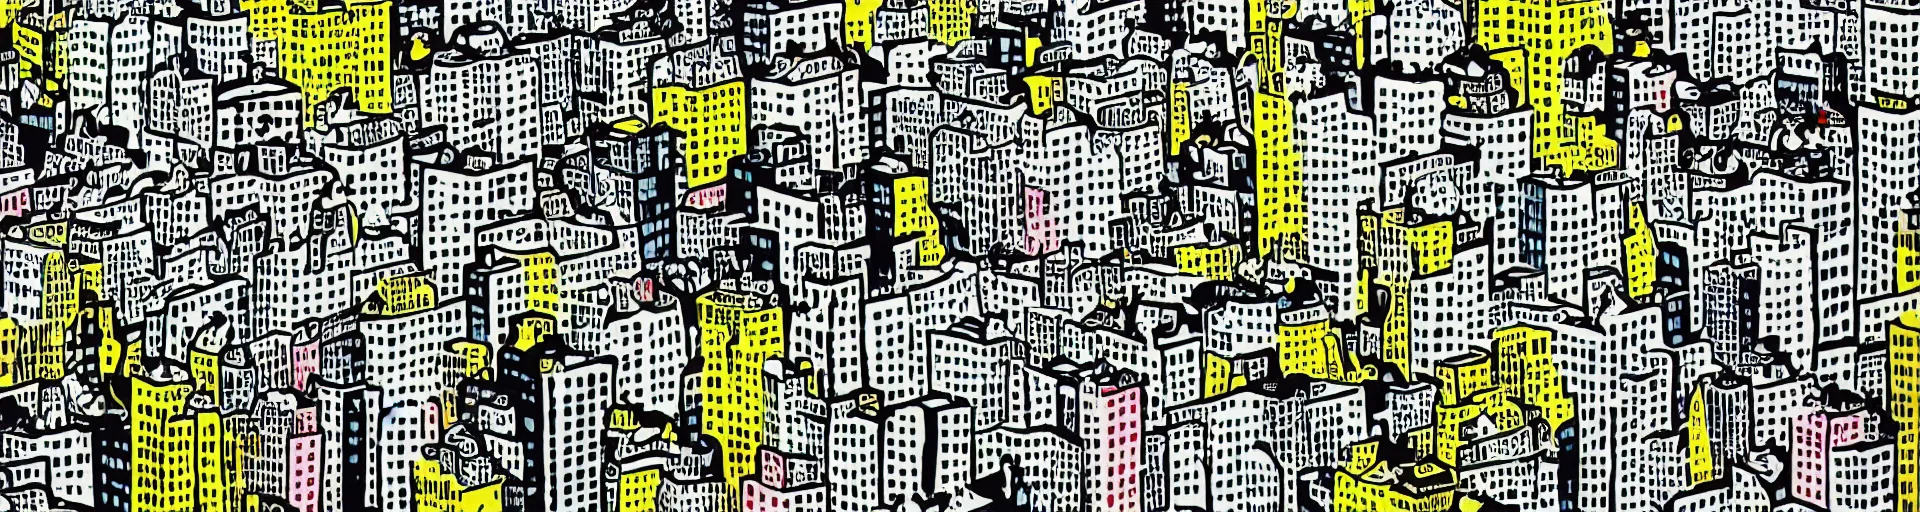 Prompt: birds in the city by roy lichtenstein